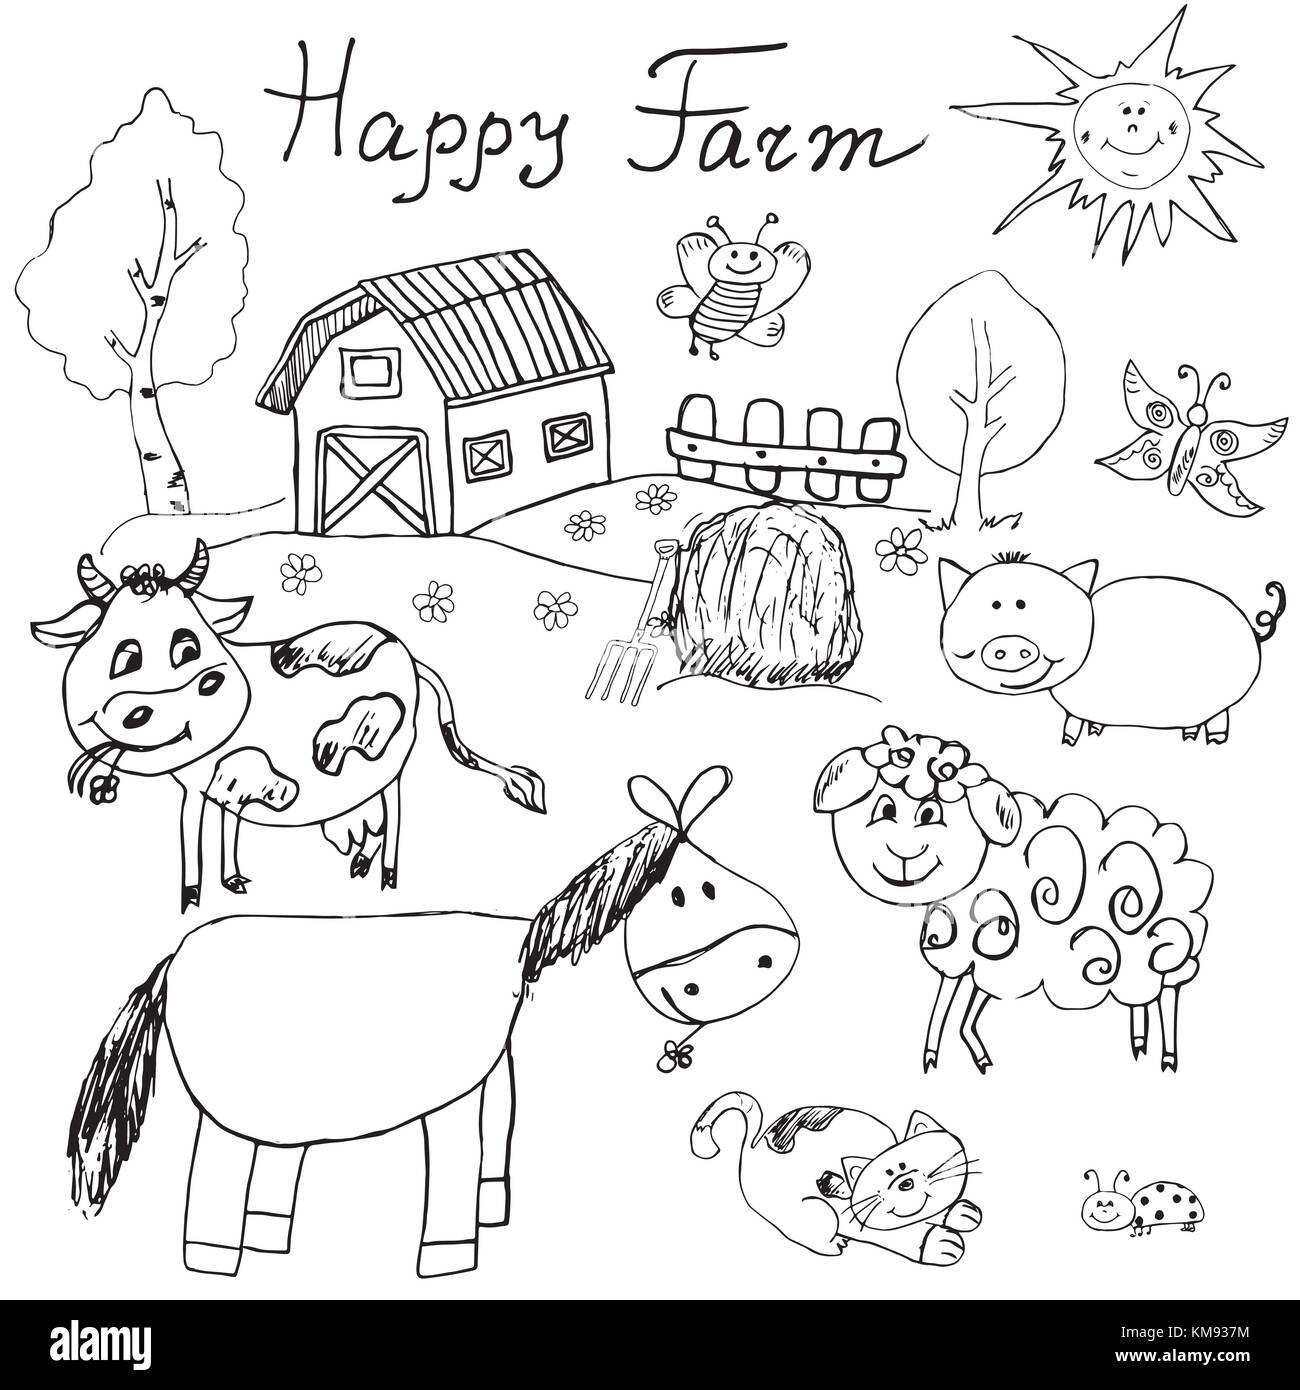 Happy farm doodles Symbole gesetzt. Hand gezeichnete Skizze mit Pferd, Kuh, Schafe, Schweine und Scheune. kindliche cartoony sketchy Vektor-illustration isoliert. Stock Vektor